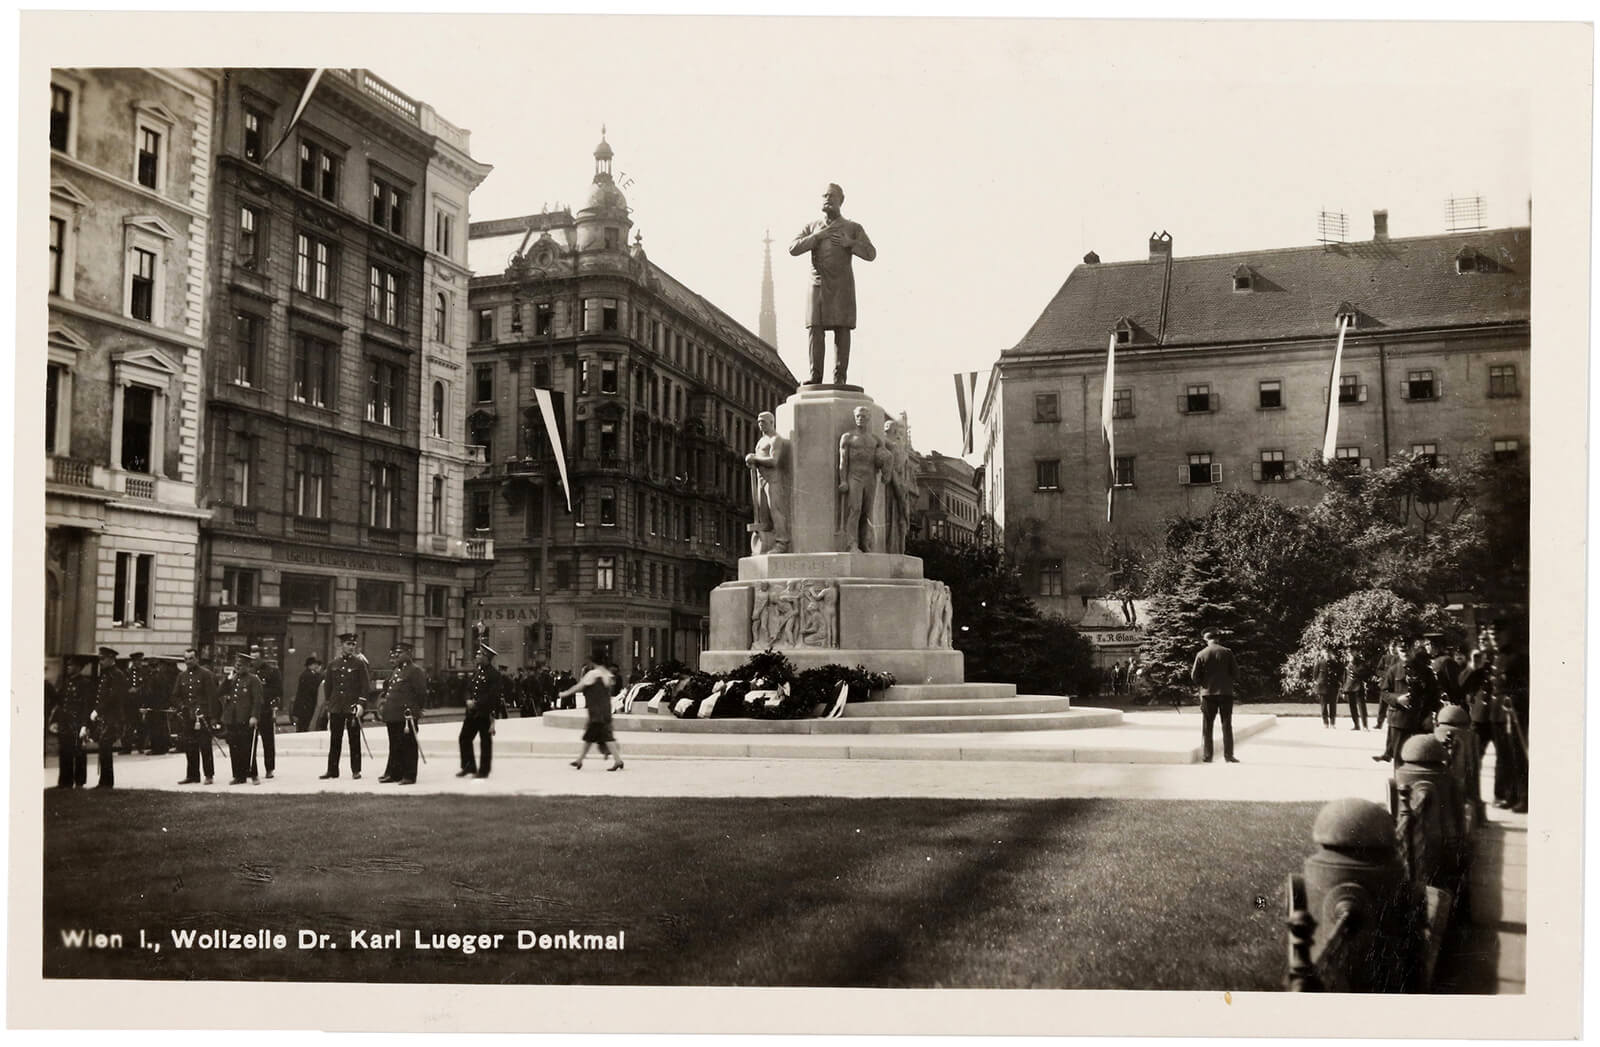 Ansichtskarte des neuen Denkmals, 1926, Wien Museum 